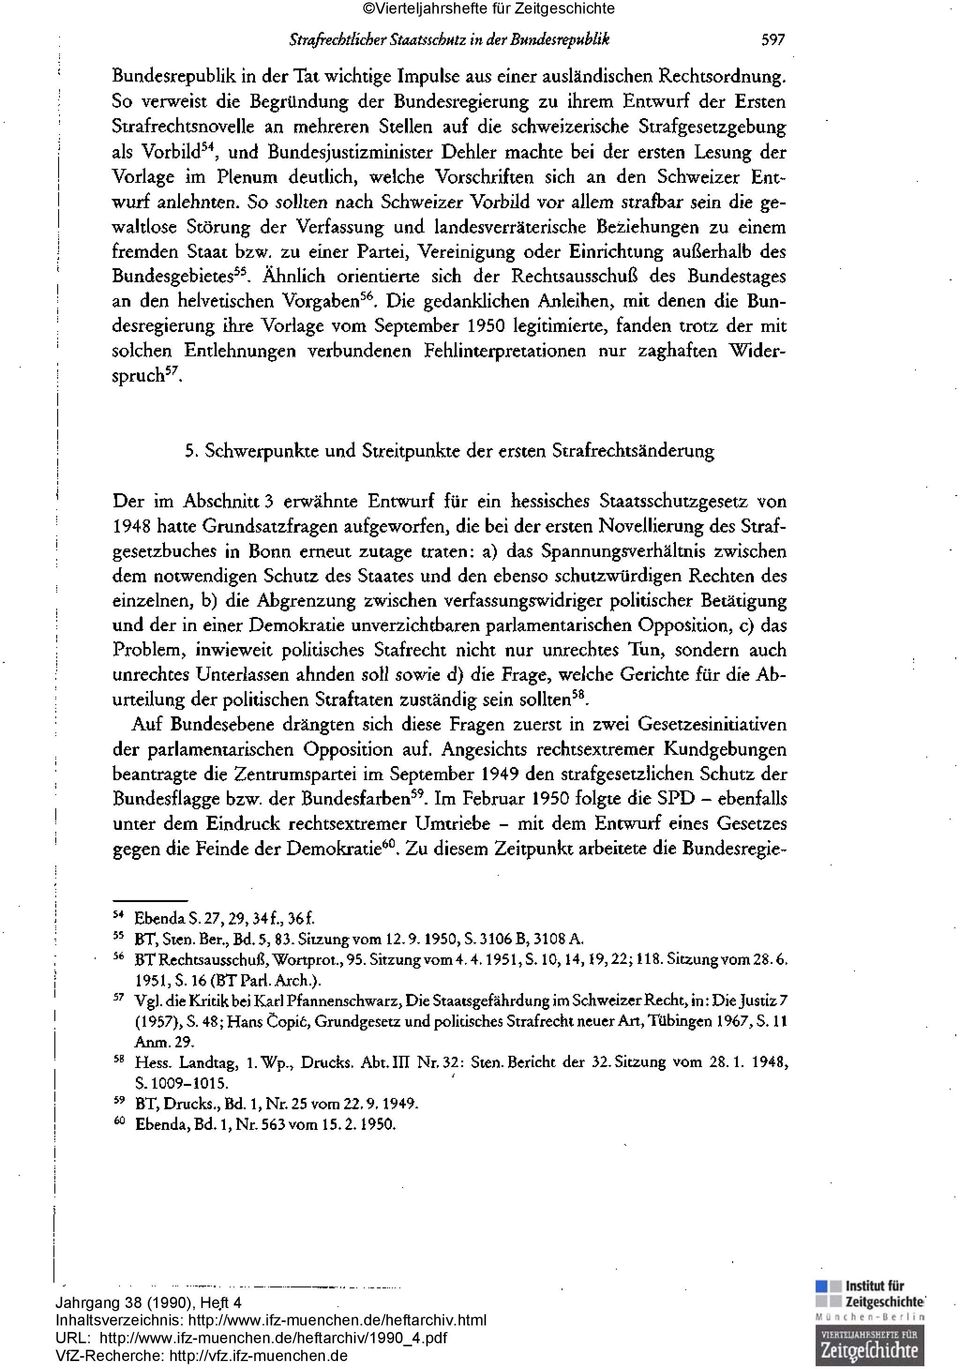 Dehler machte bei der ersten Lesung der Vorlage im Plenum deutlich, welche Vorschriften sich an den Schweizer Entwurf anlehnten.